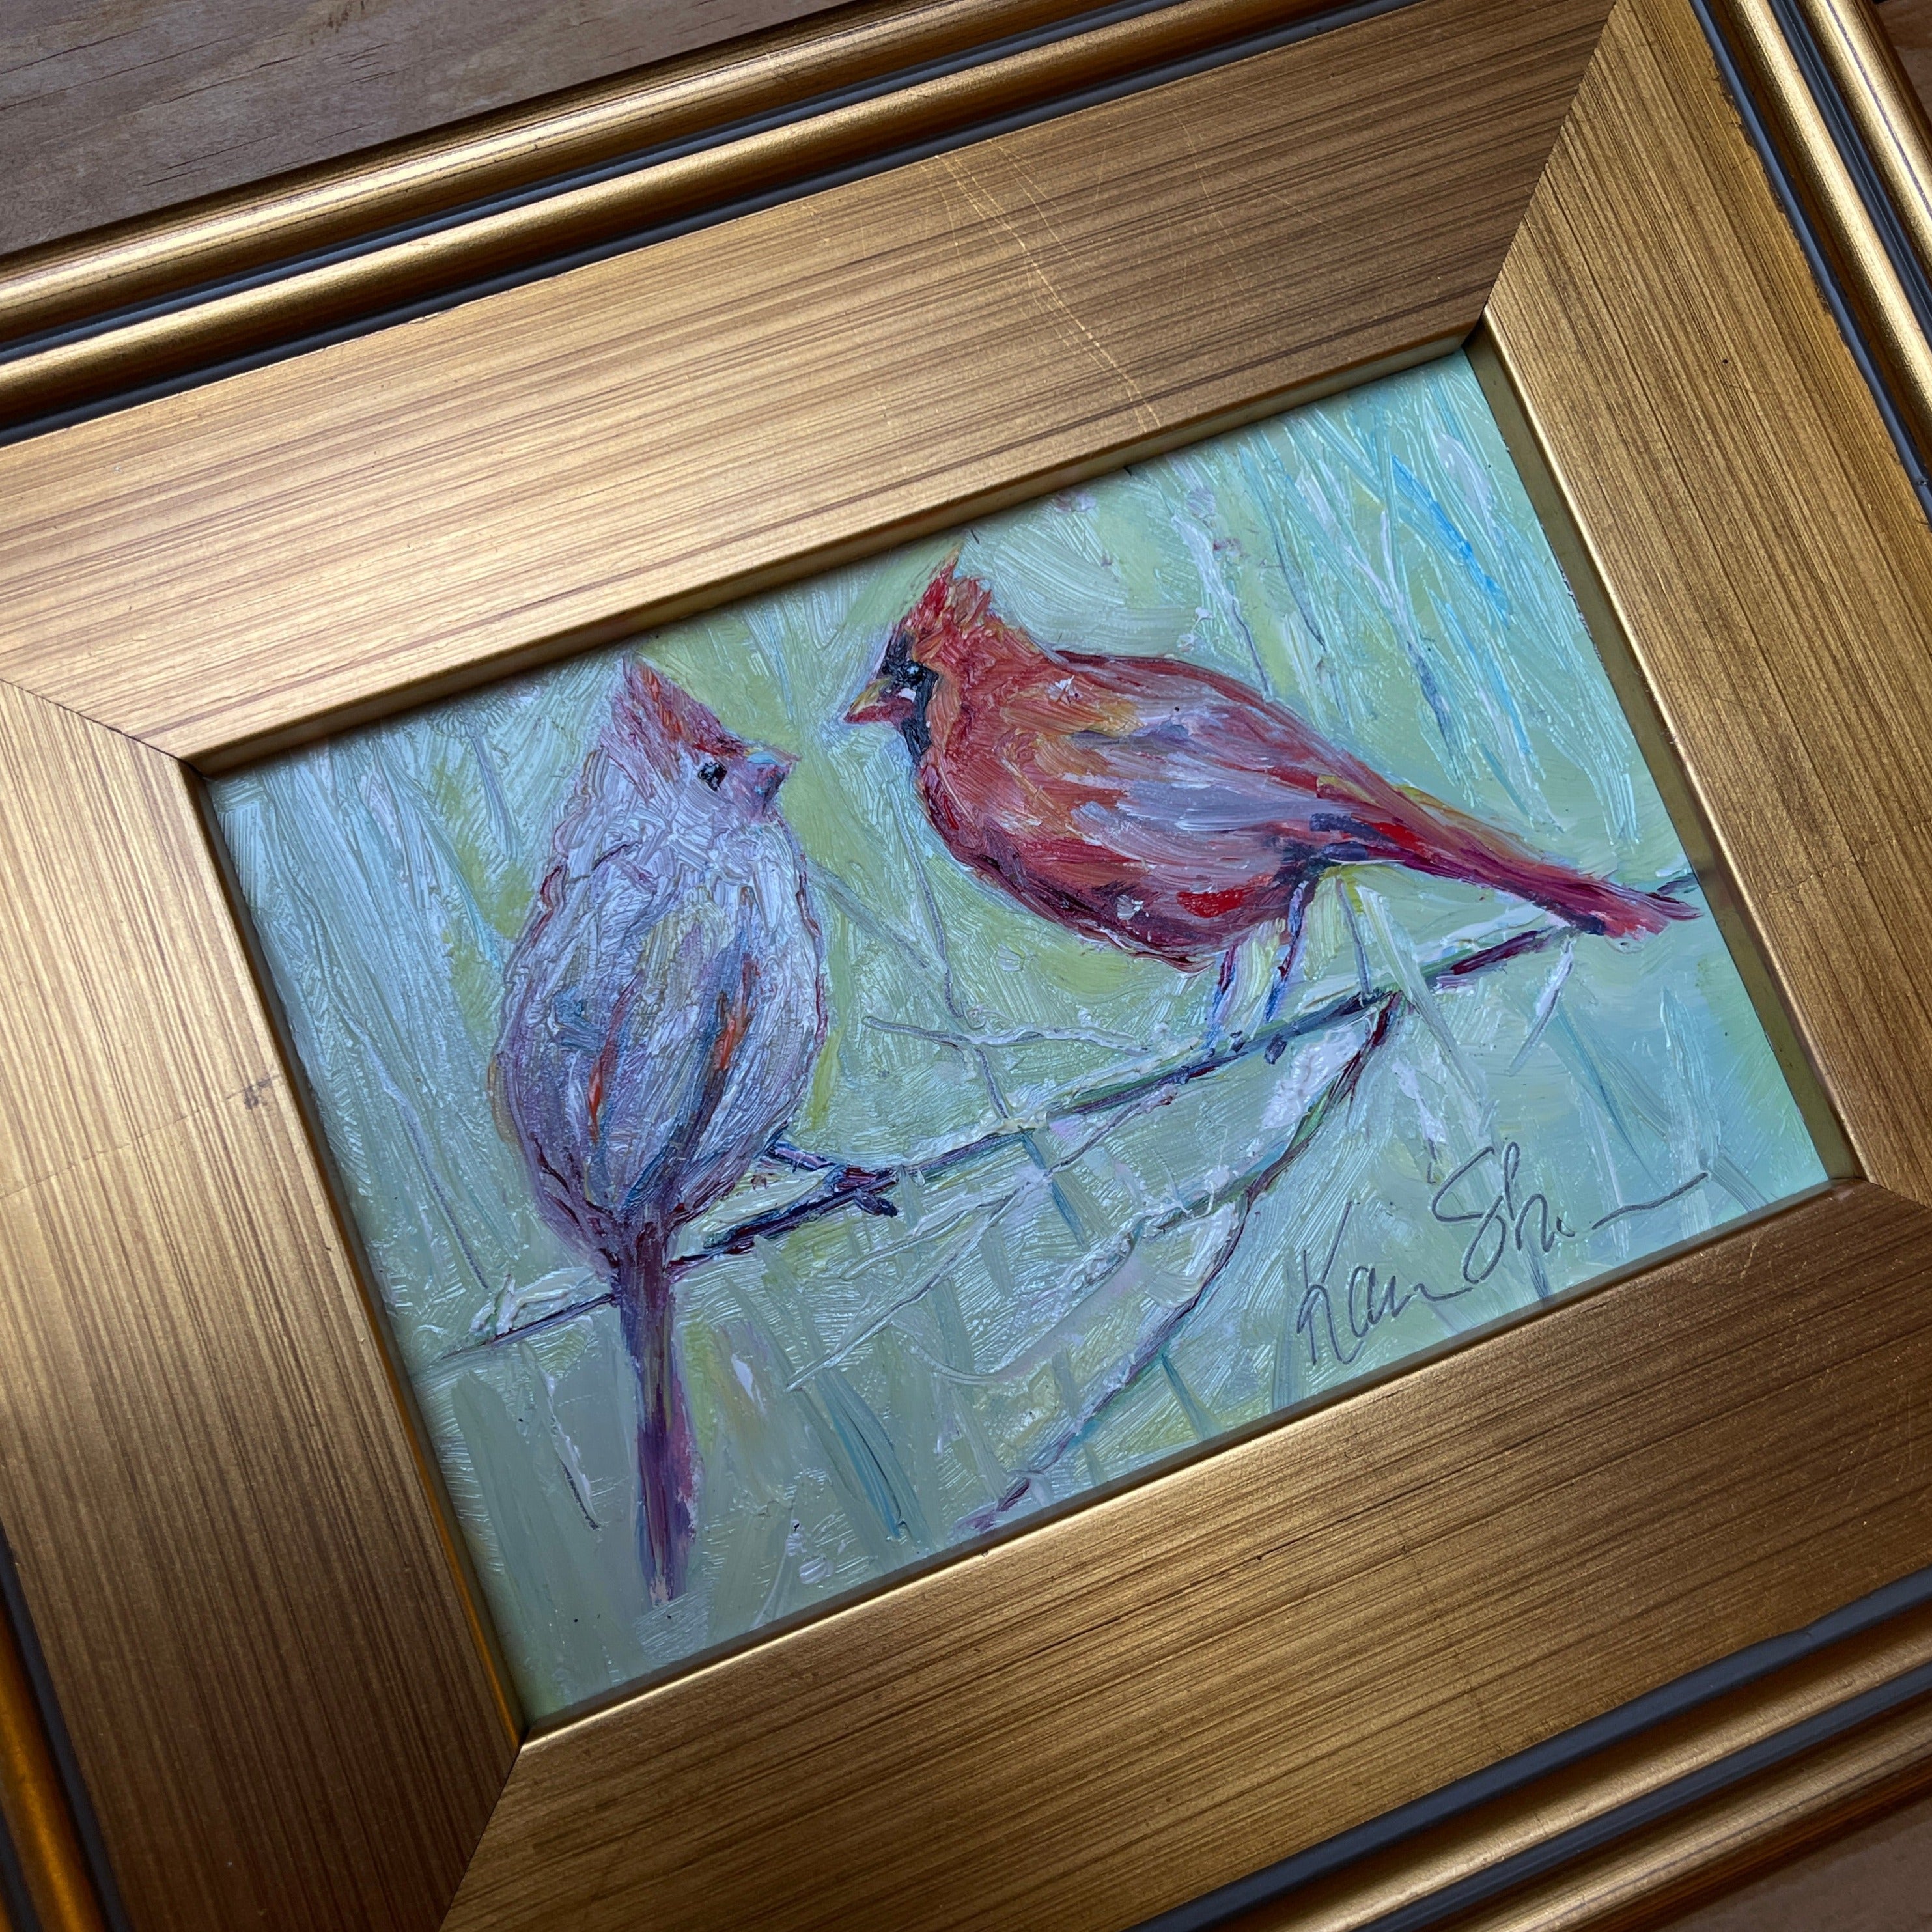 "Cardinal Love Birds" by Karin Sheer